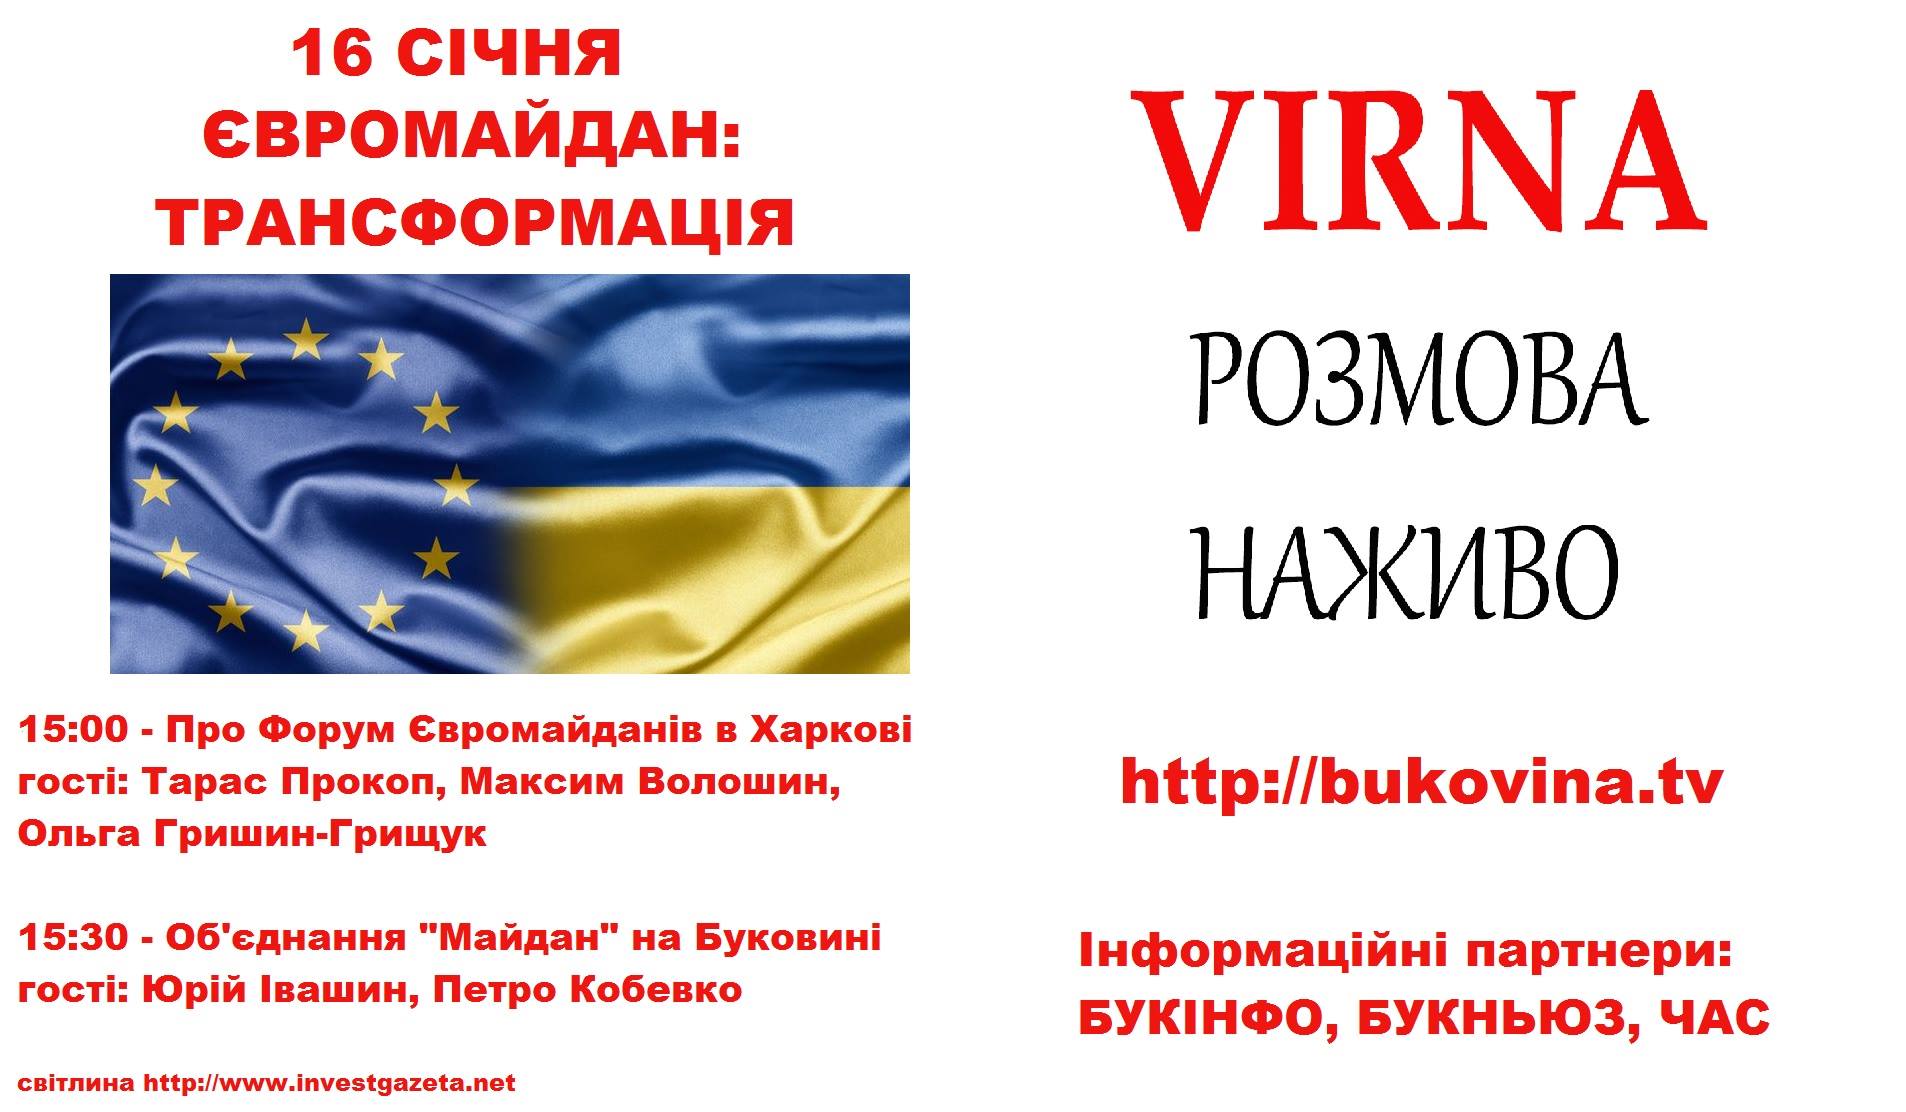 VIRNA Розмова Наживо: 'Євромайдан: Трансформація'